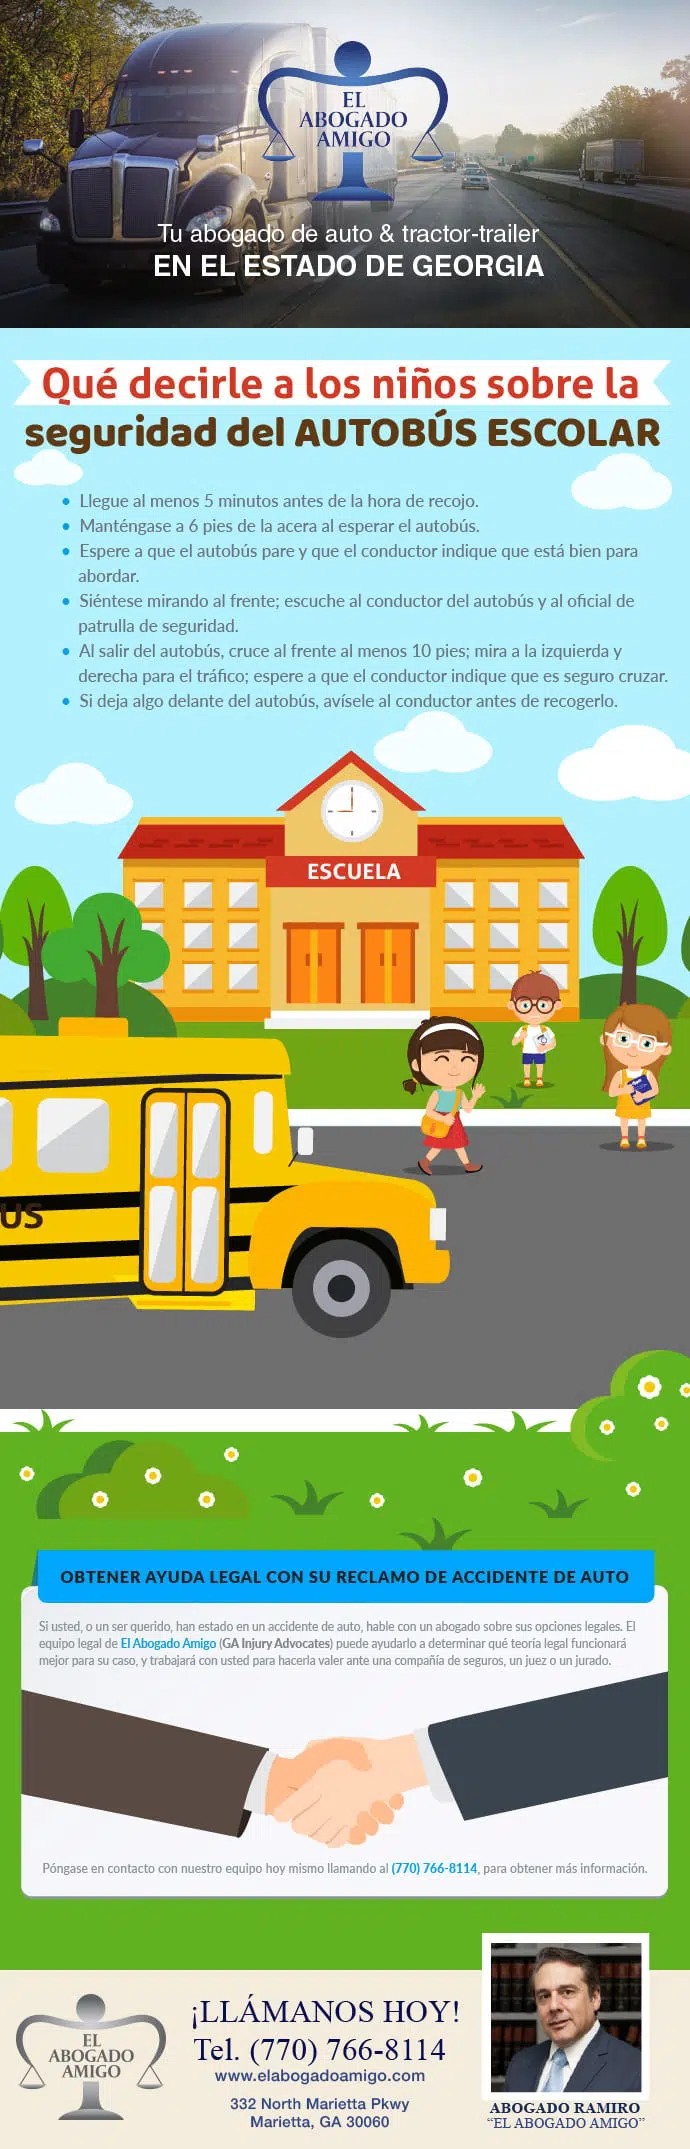 Qué decirle a los niños sobre la seguridad del autobús escolar